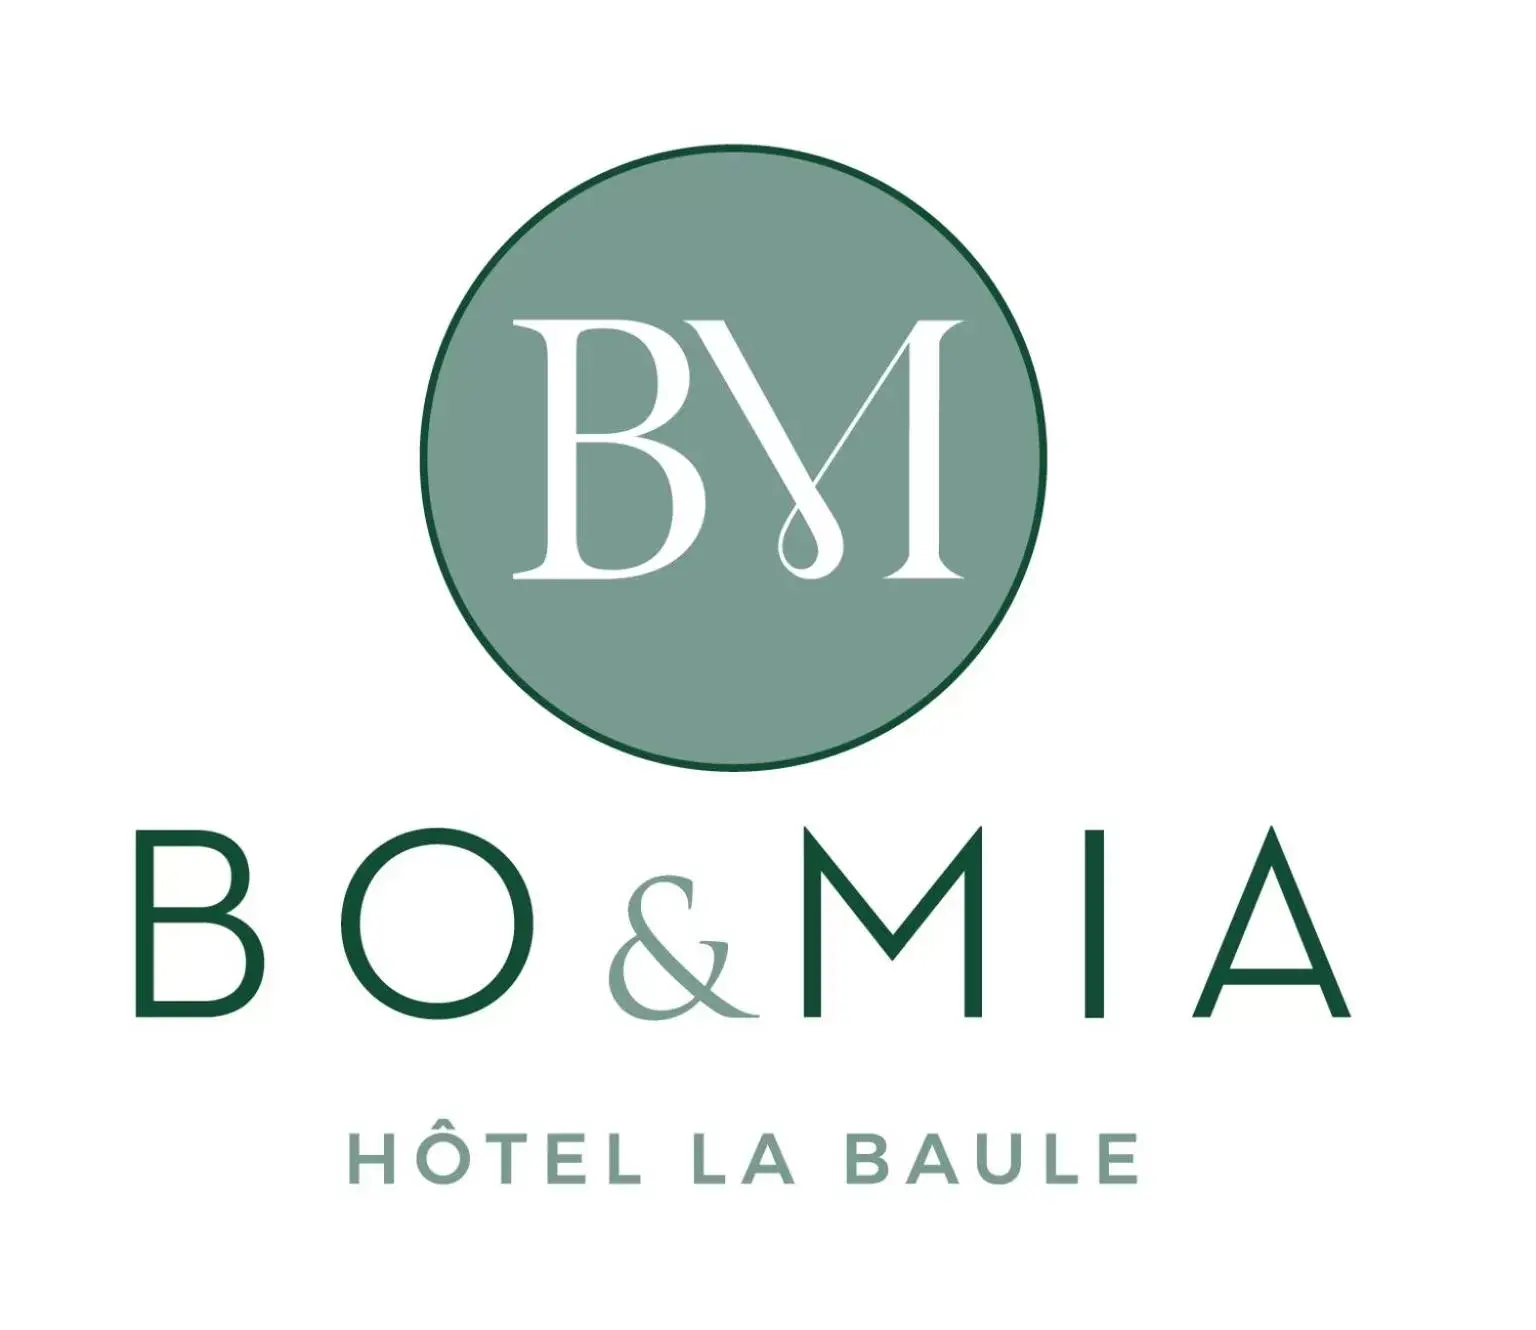 Property logo or sign in Hôtel Restaurant BO & MIA